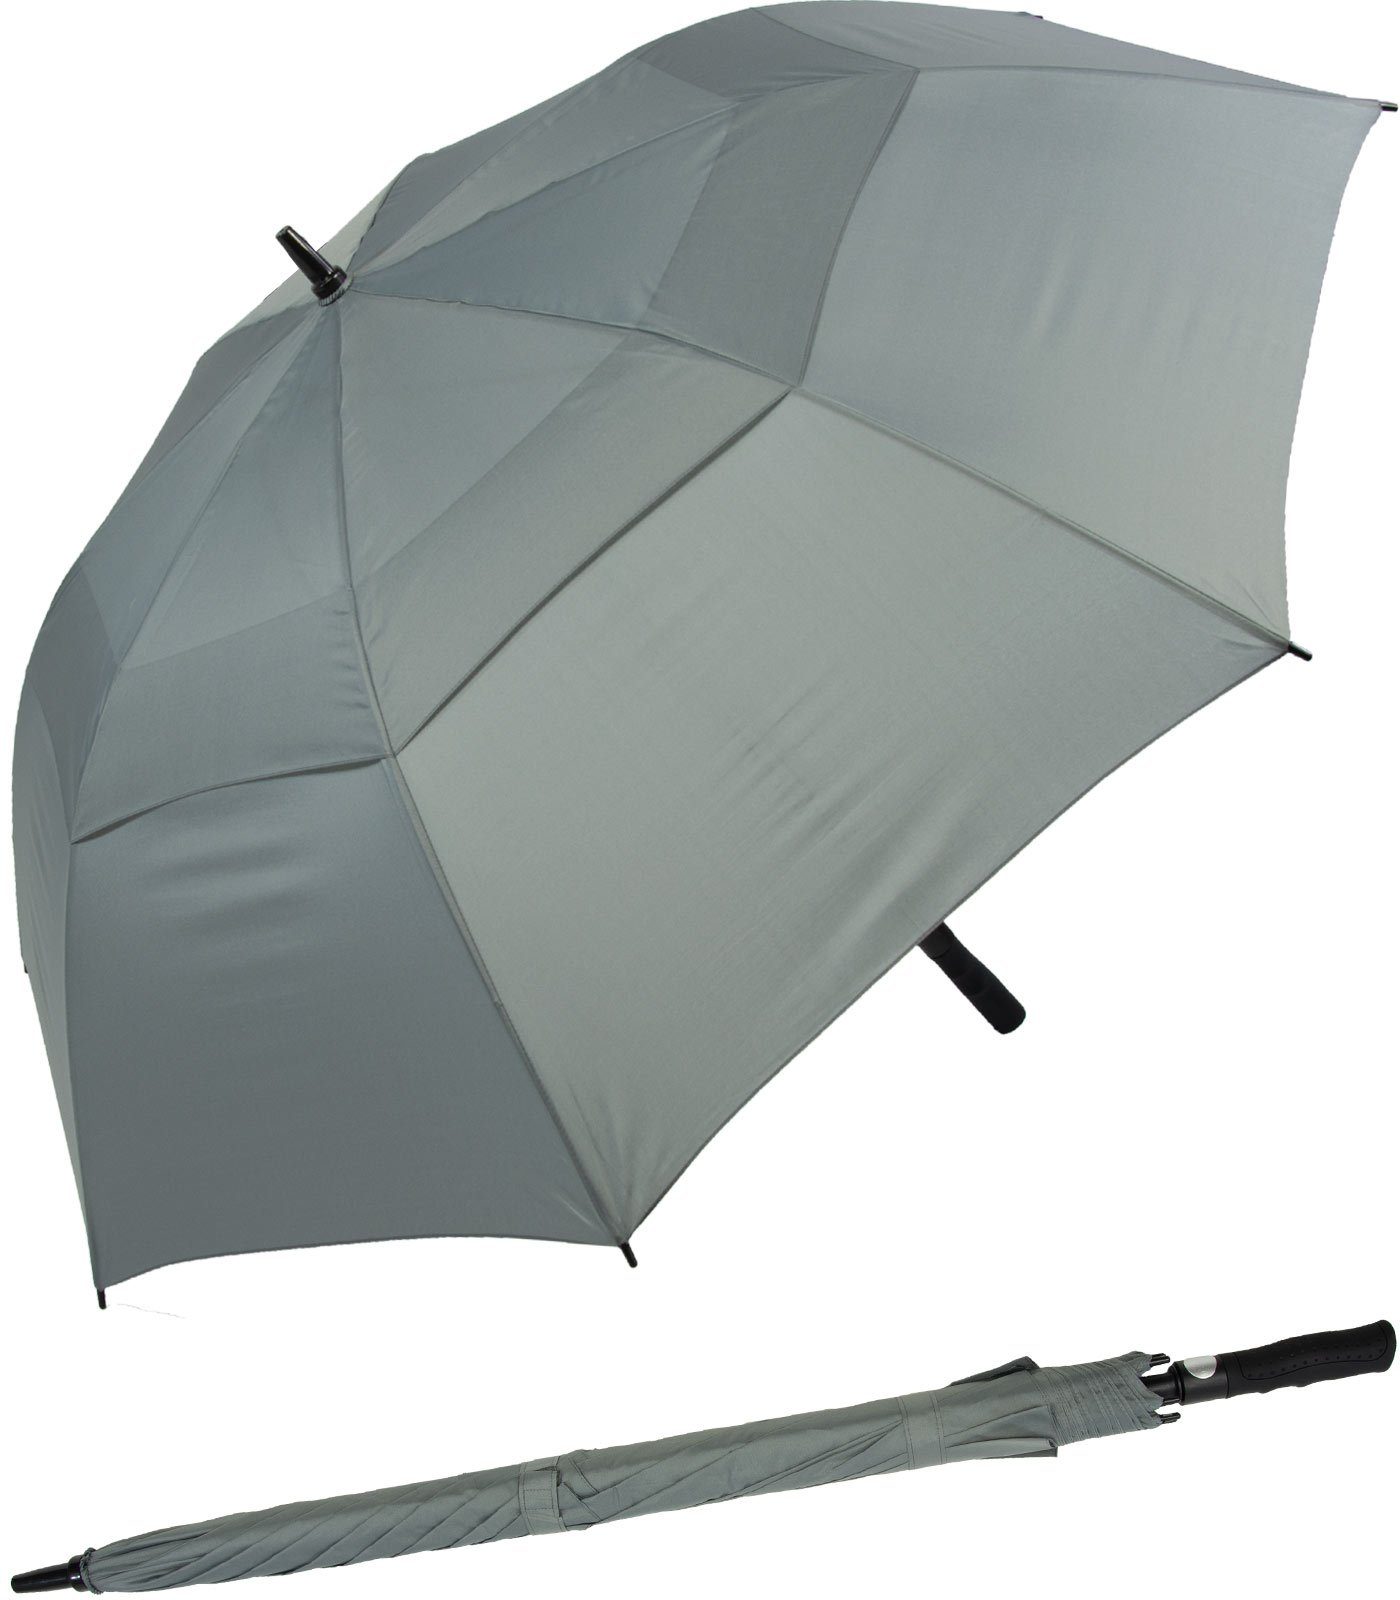 Impliva Langregenschirm Falcone® XXL Golfschirm mit Glasfibergestell, innovatives Design mit Auf-Automatik grau